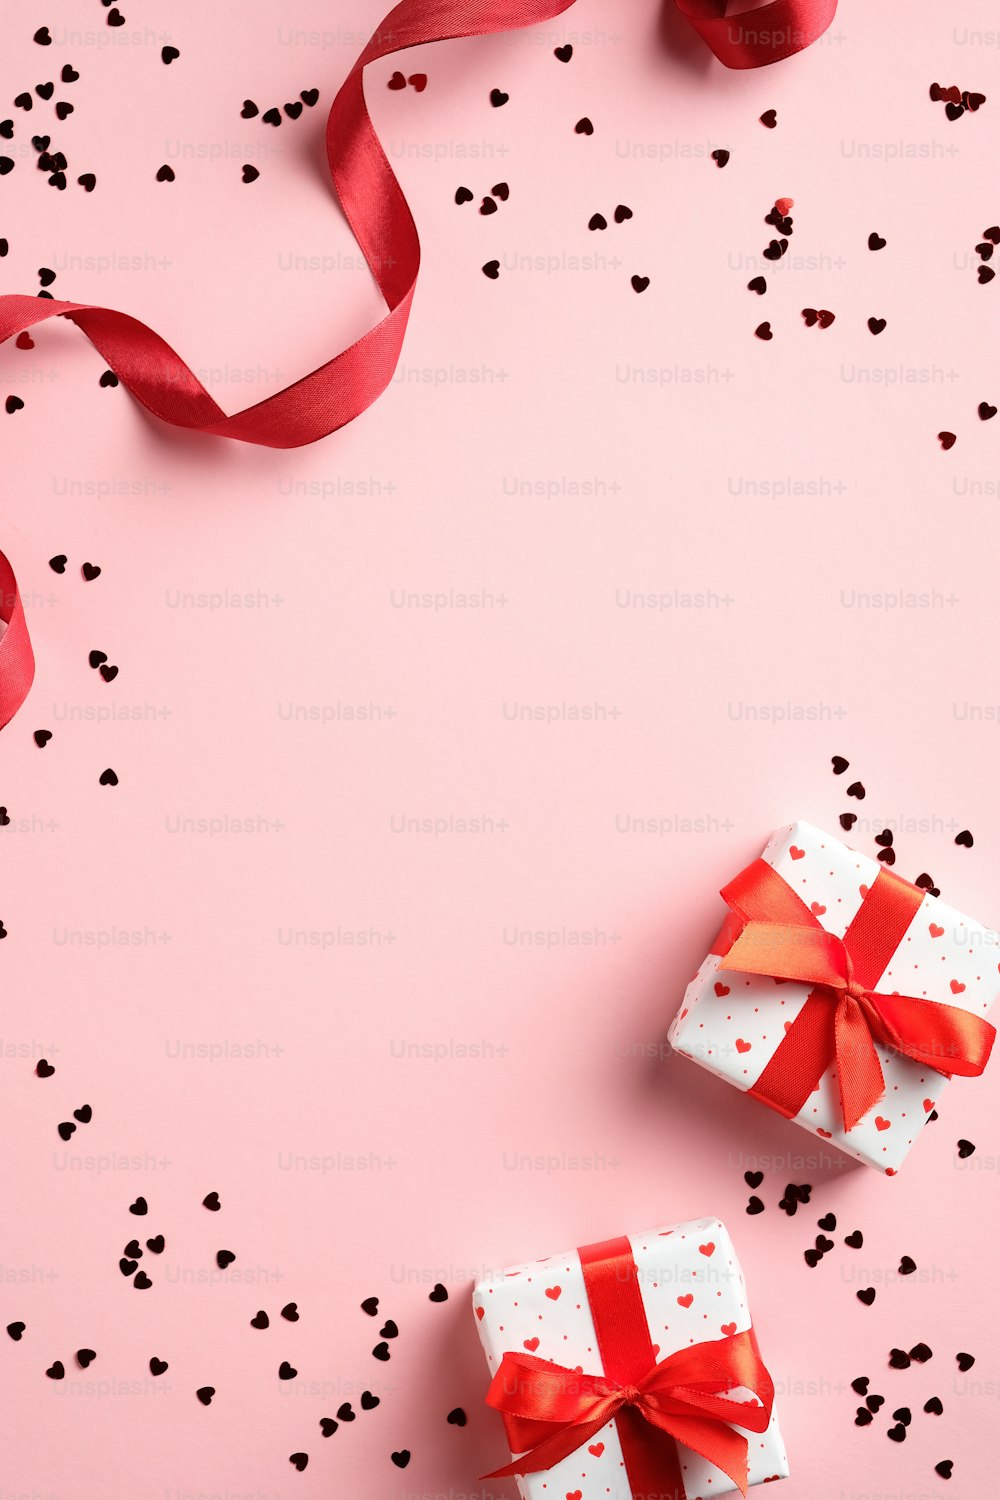 Modelo de cartão do dia dos namorados com presentes, fita vermelha, confete no fundo rosa. Flat lay, vista superior, espaço de cópia.